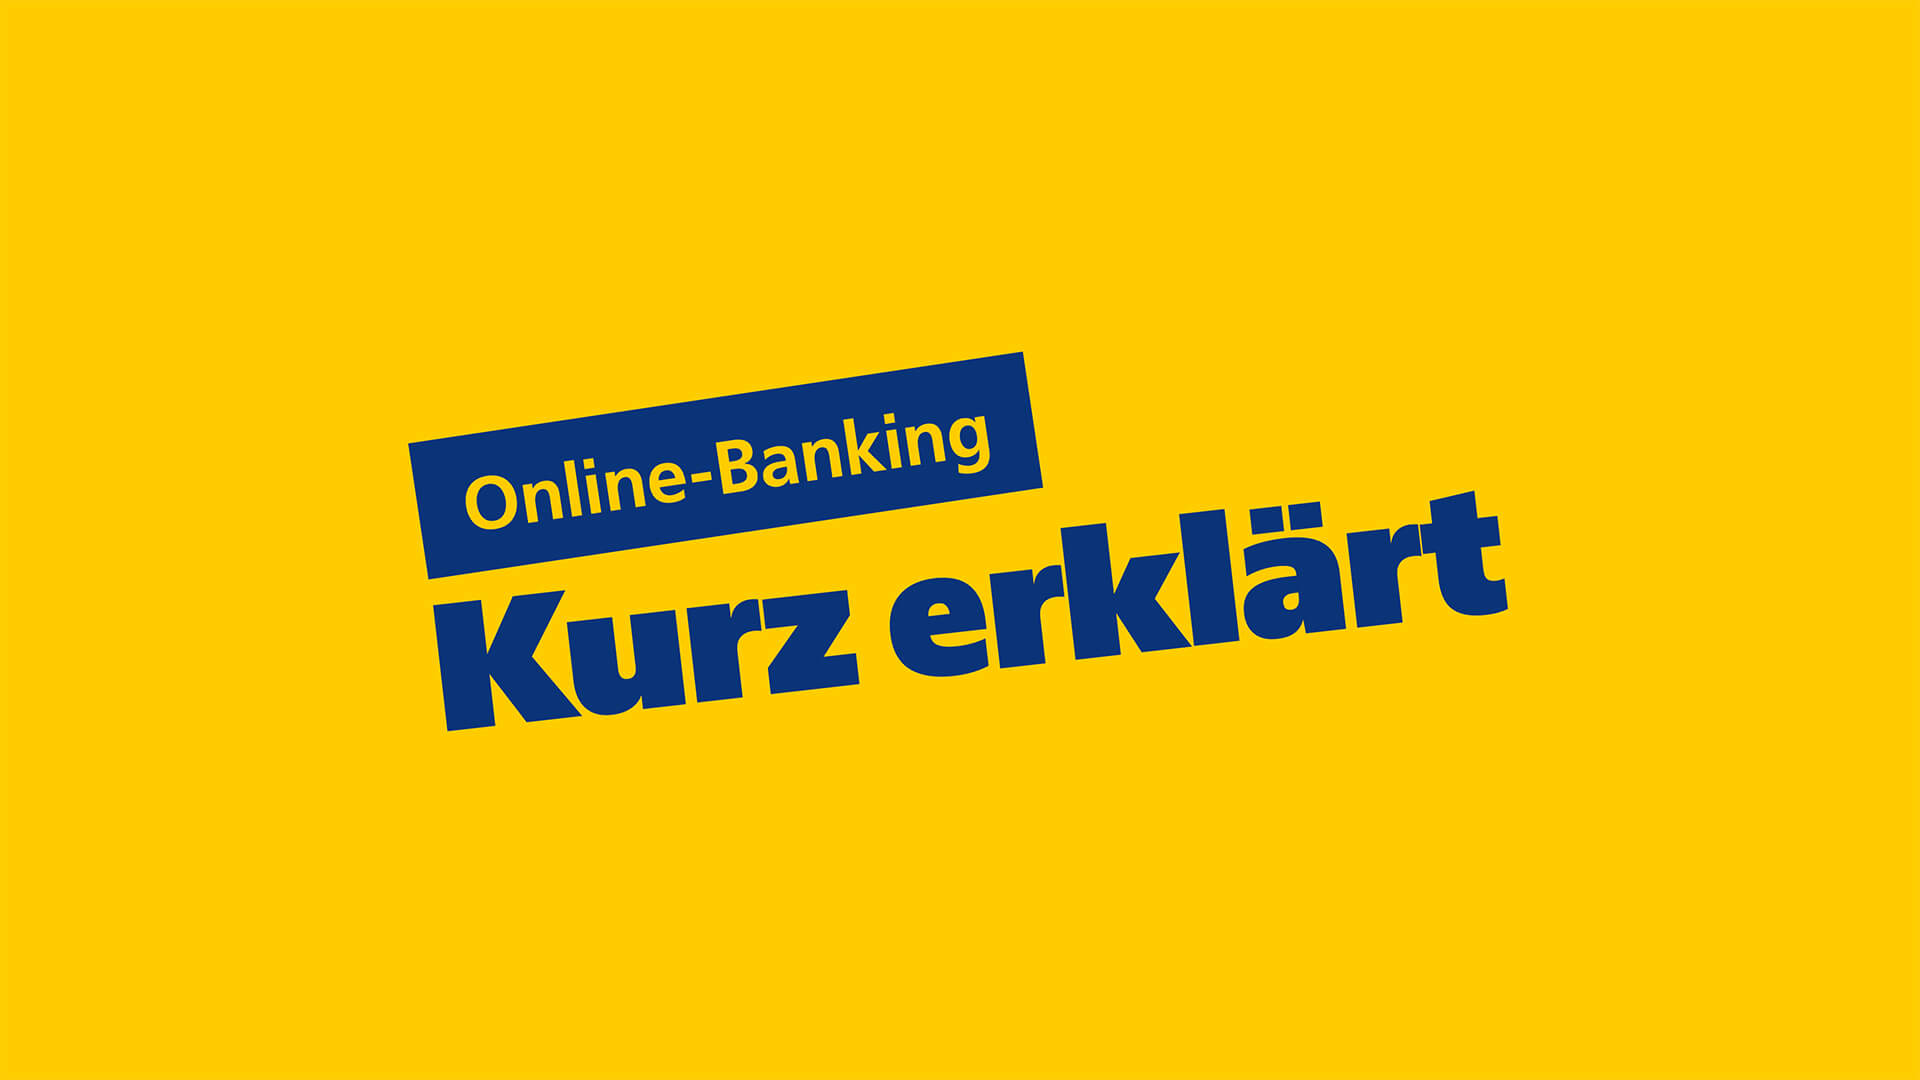 Online-Banking kurz erklärt